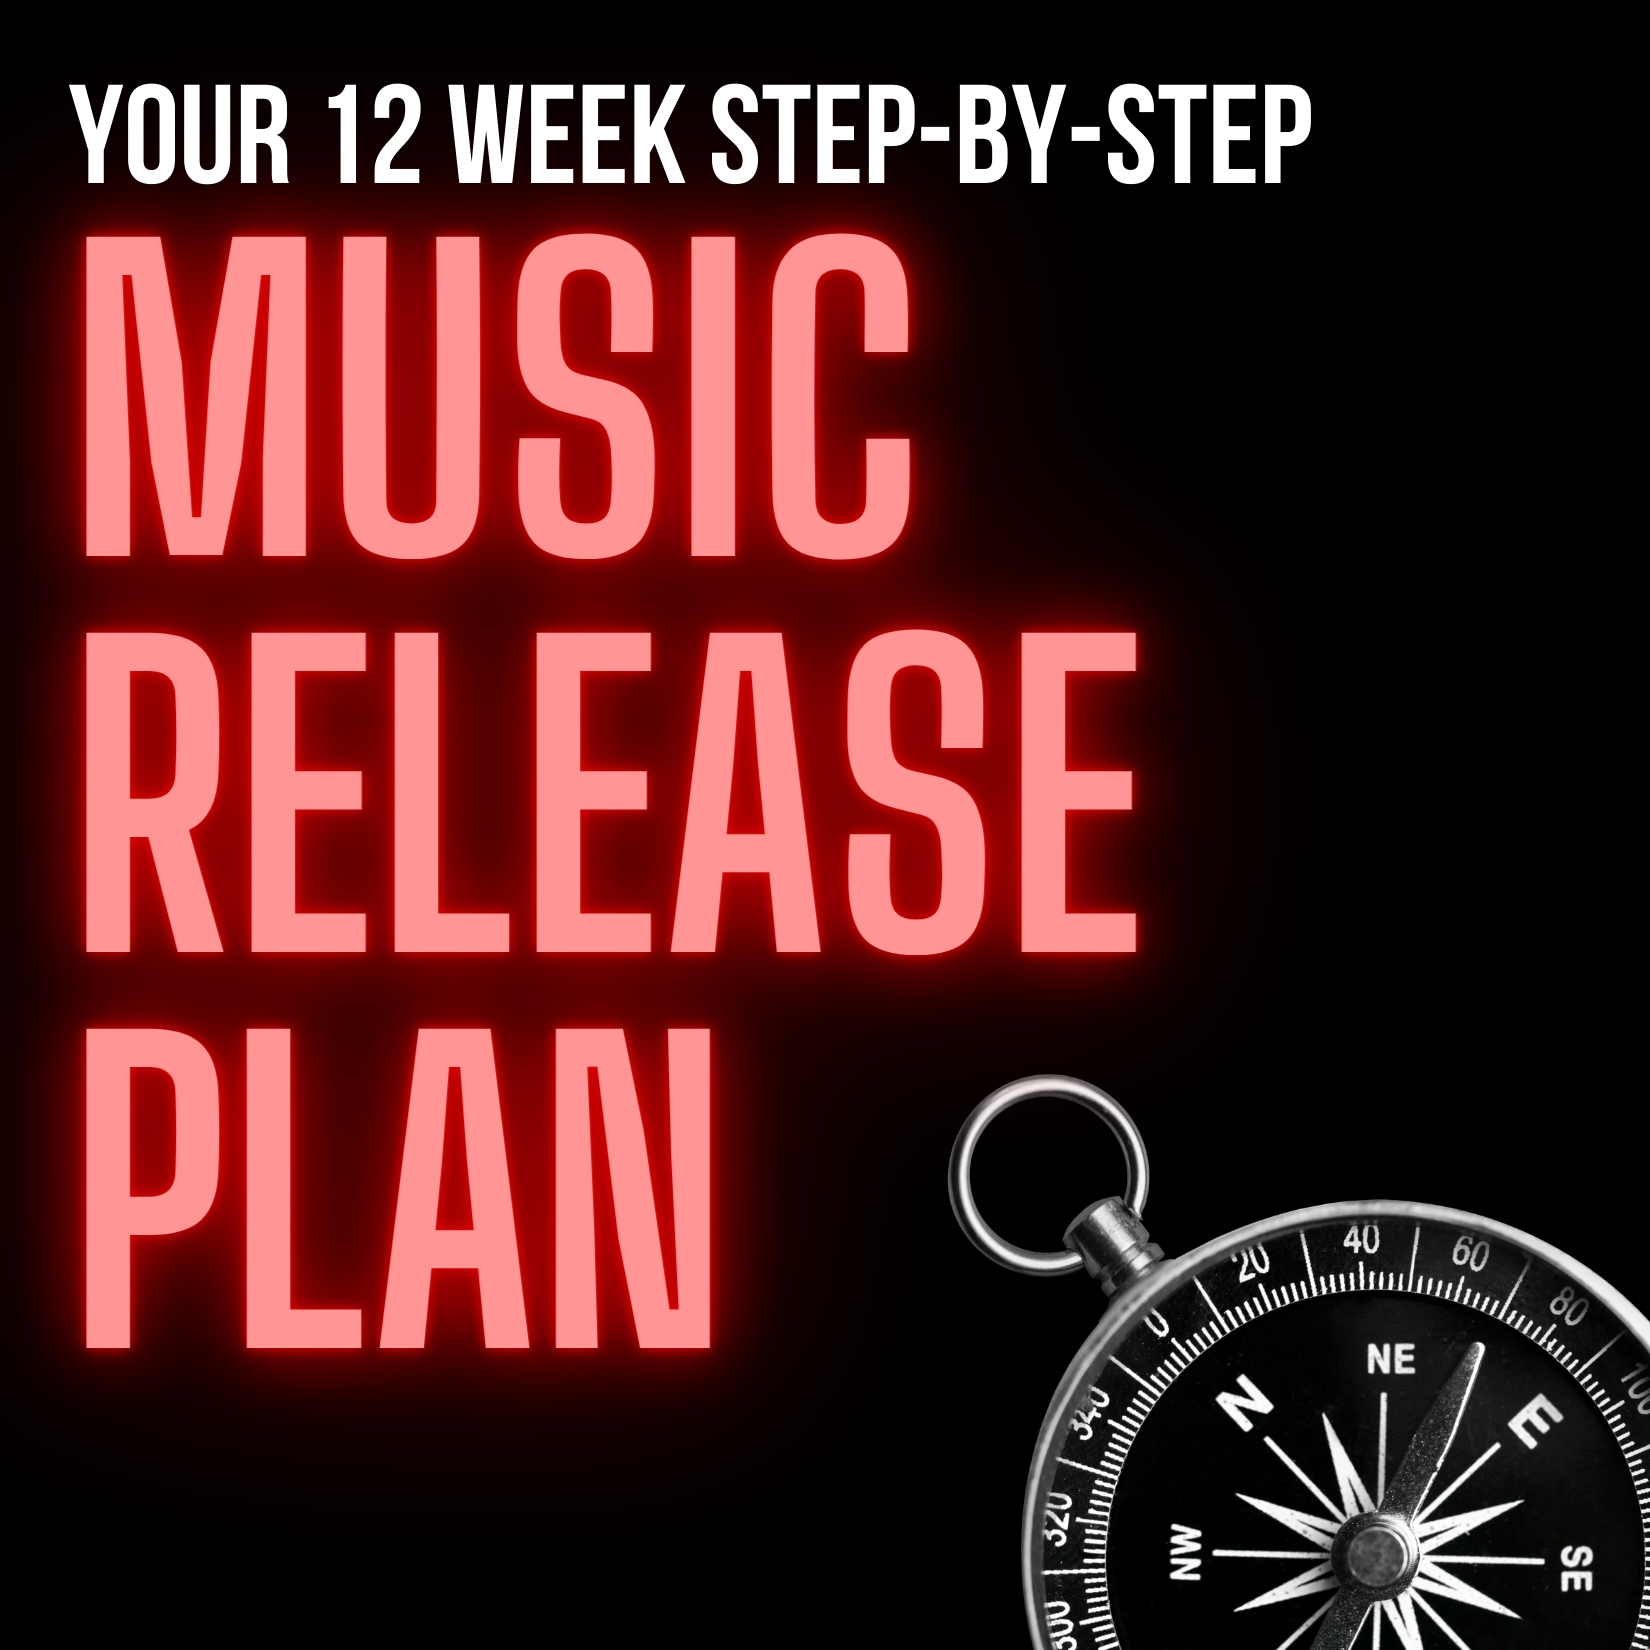 https://www.cyberprmusic.com/wp-content/uploads/2020/10/12-week-music-release-plan.jpg